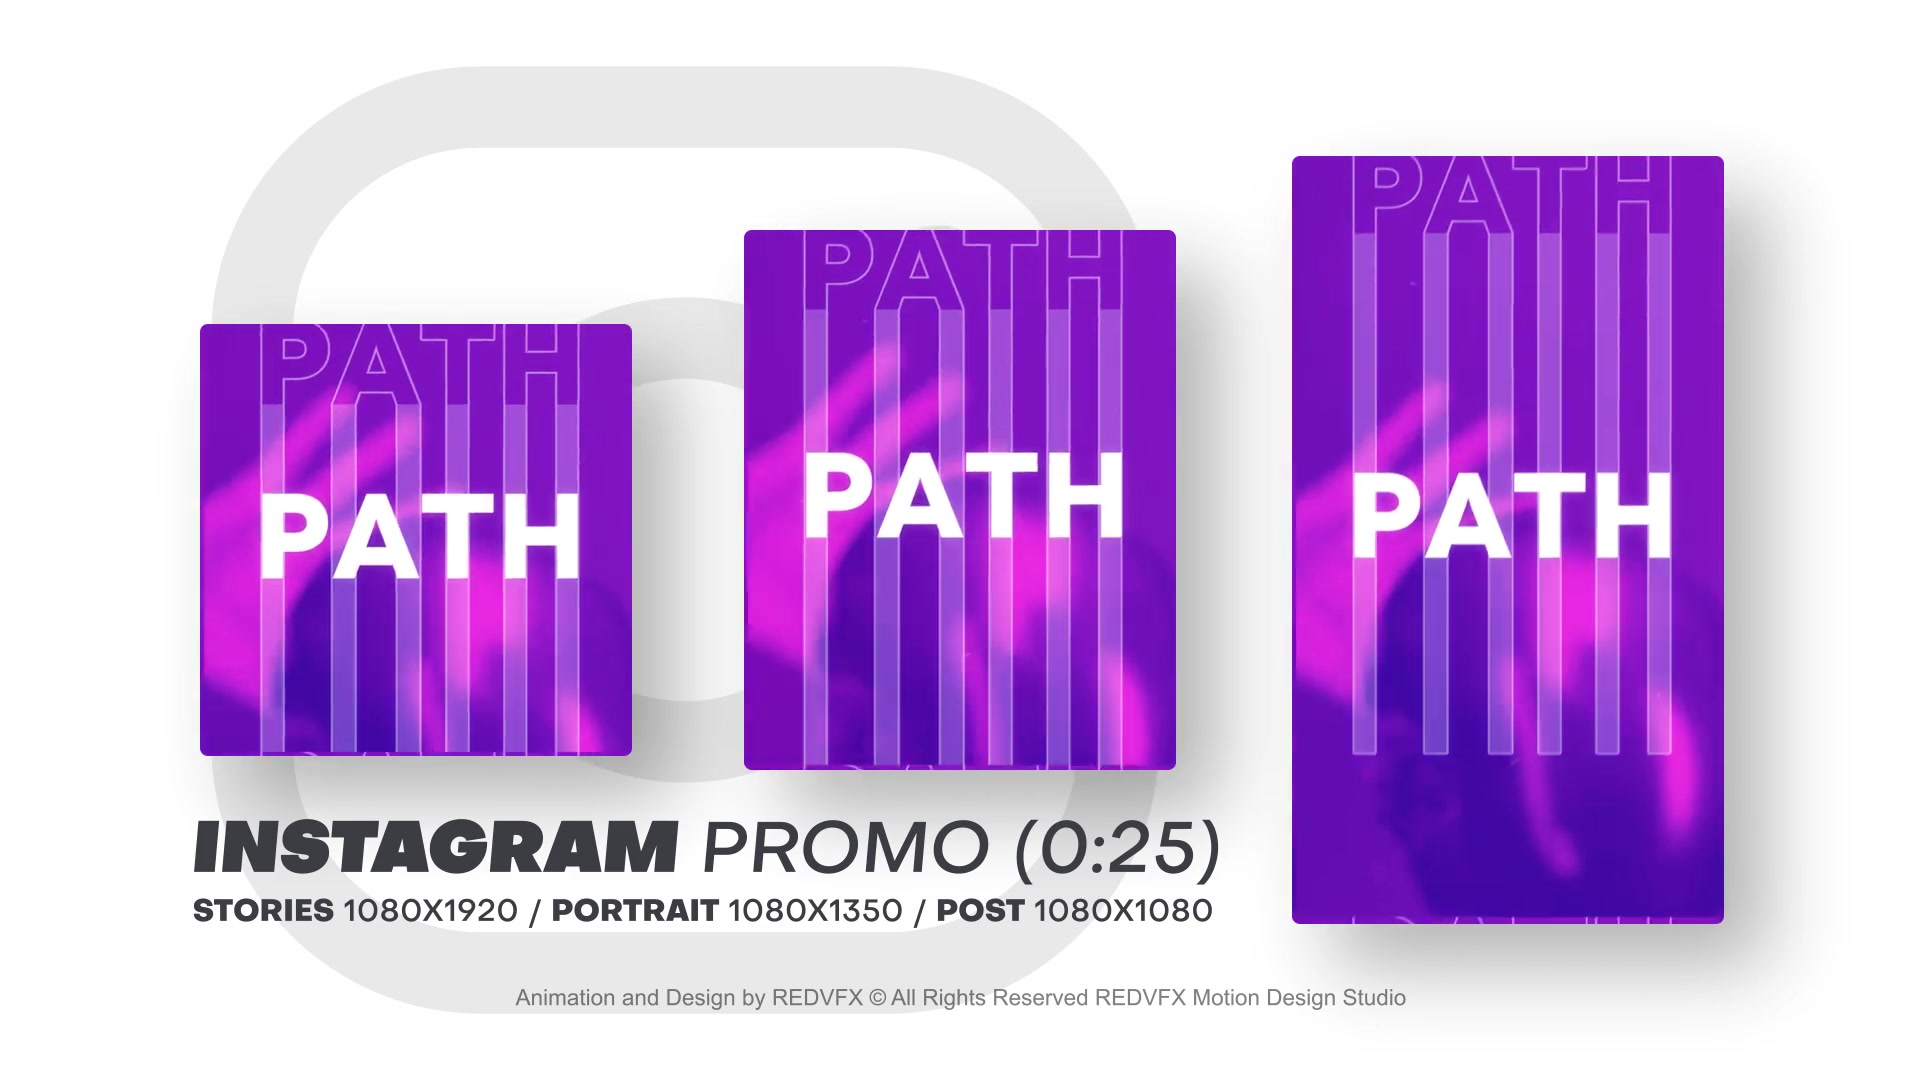 Instagram Promo for Premiere Pro Videohive 36478083 Premiere Pro Image 9